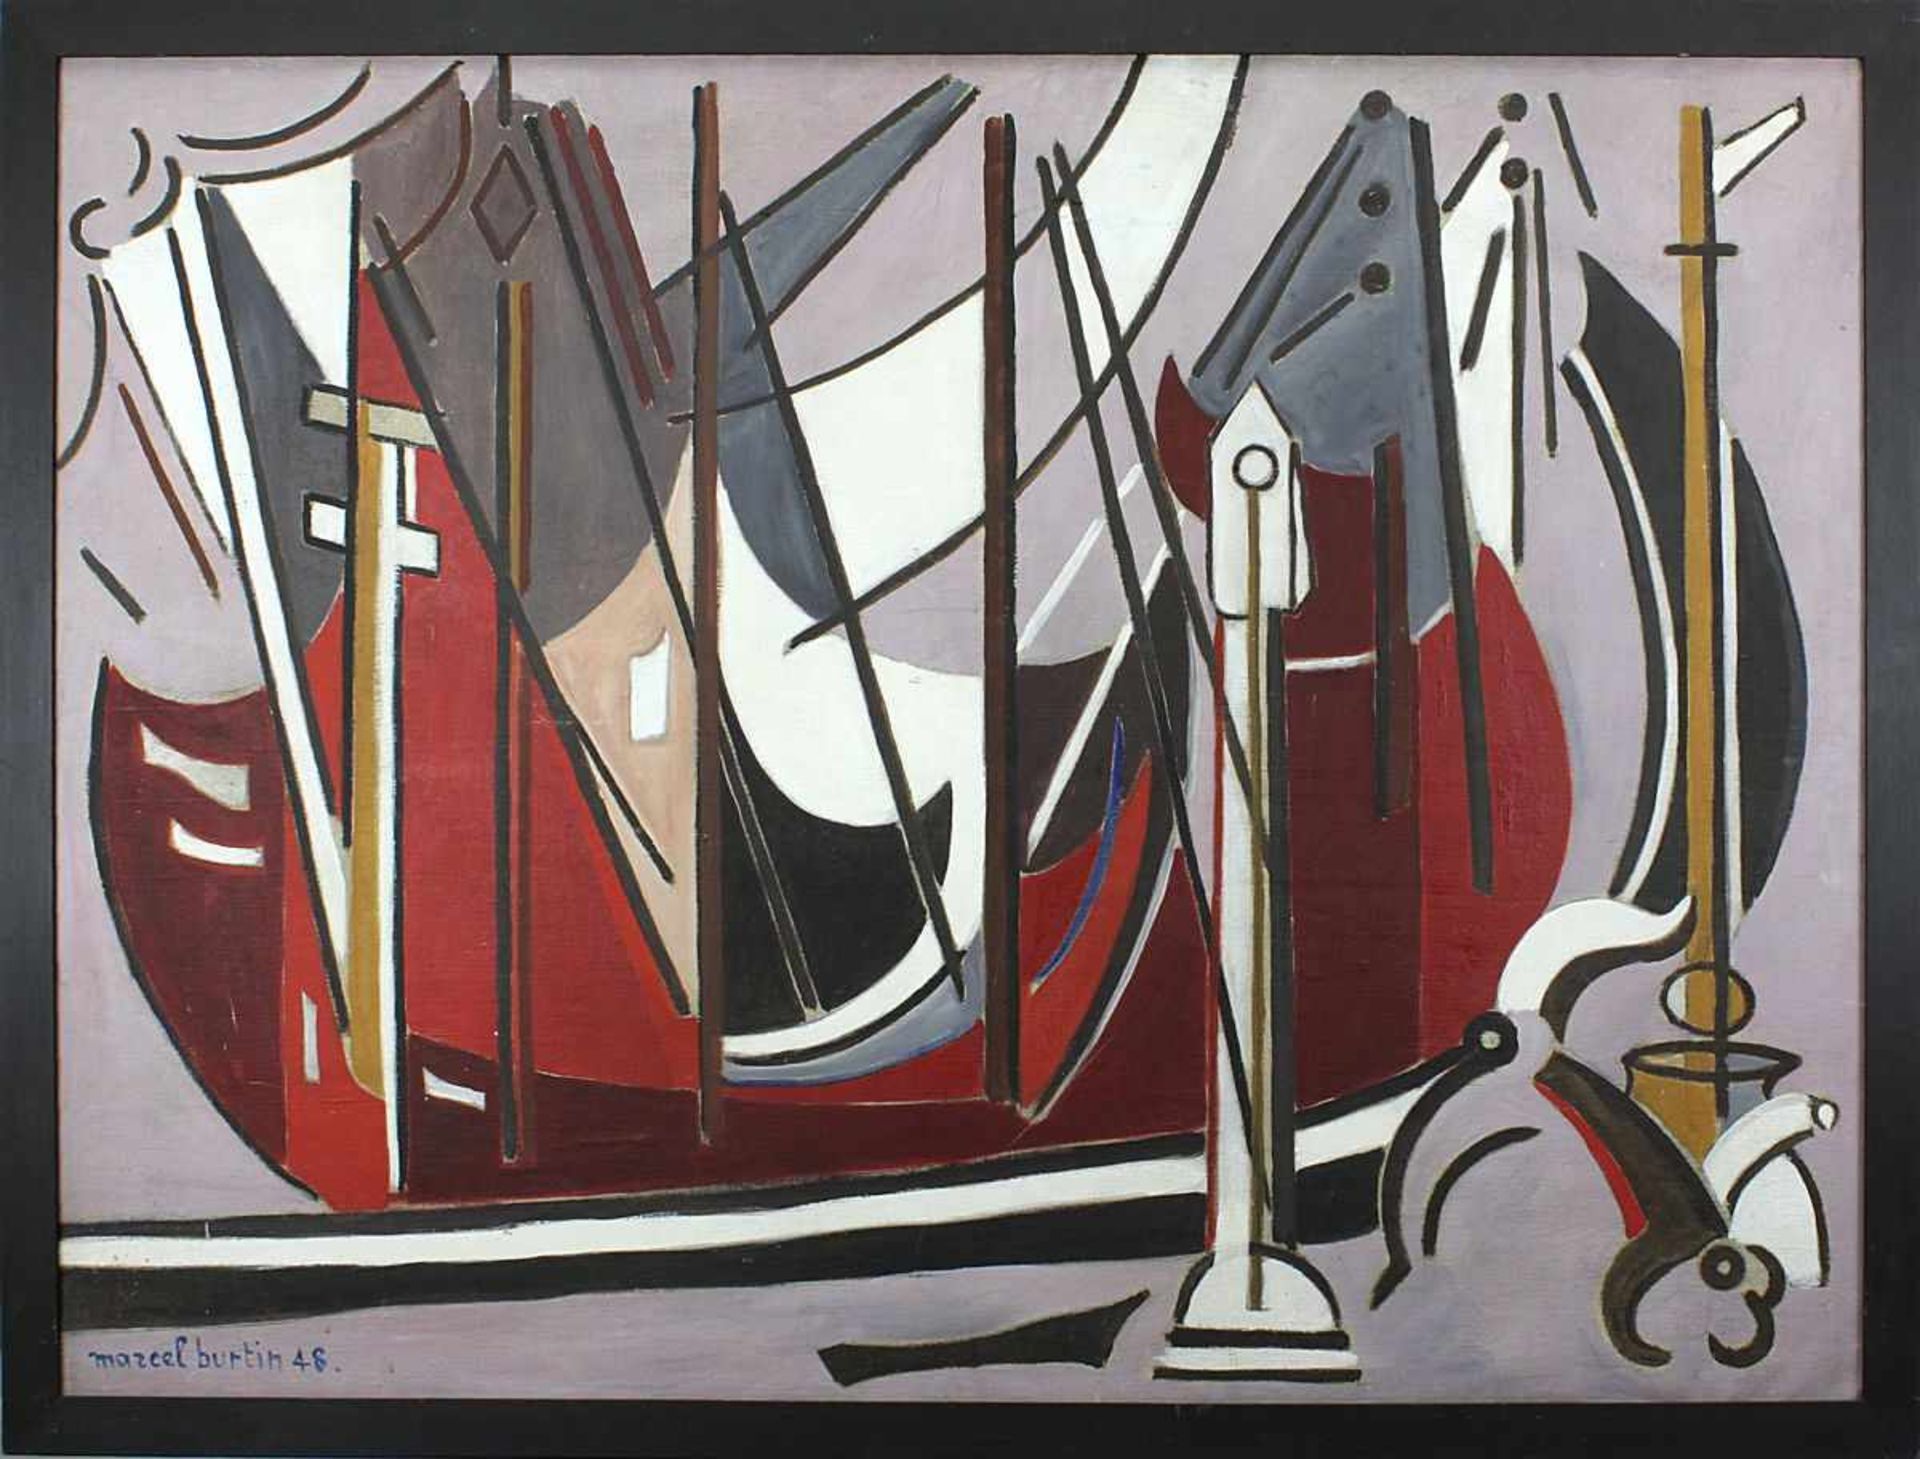 Burtin, Marcel (1902-1979), Abstrakte Komposition - Segelboote, Öl/Lwd, unt. li. signiert und